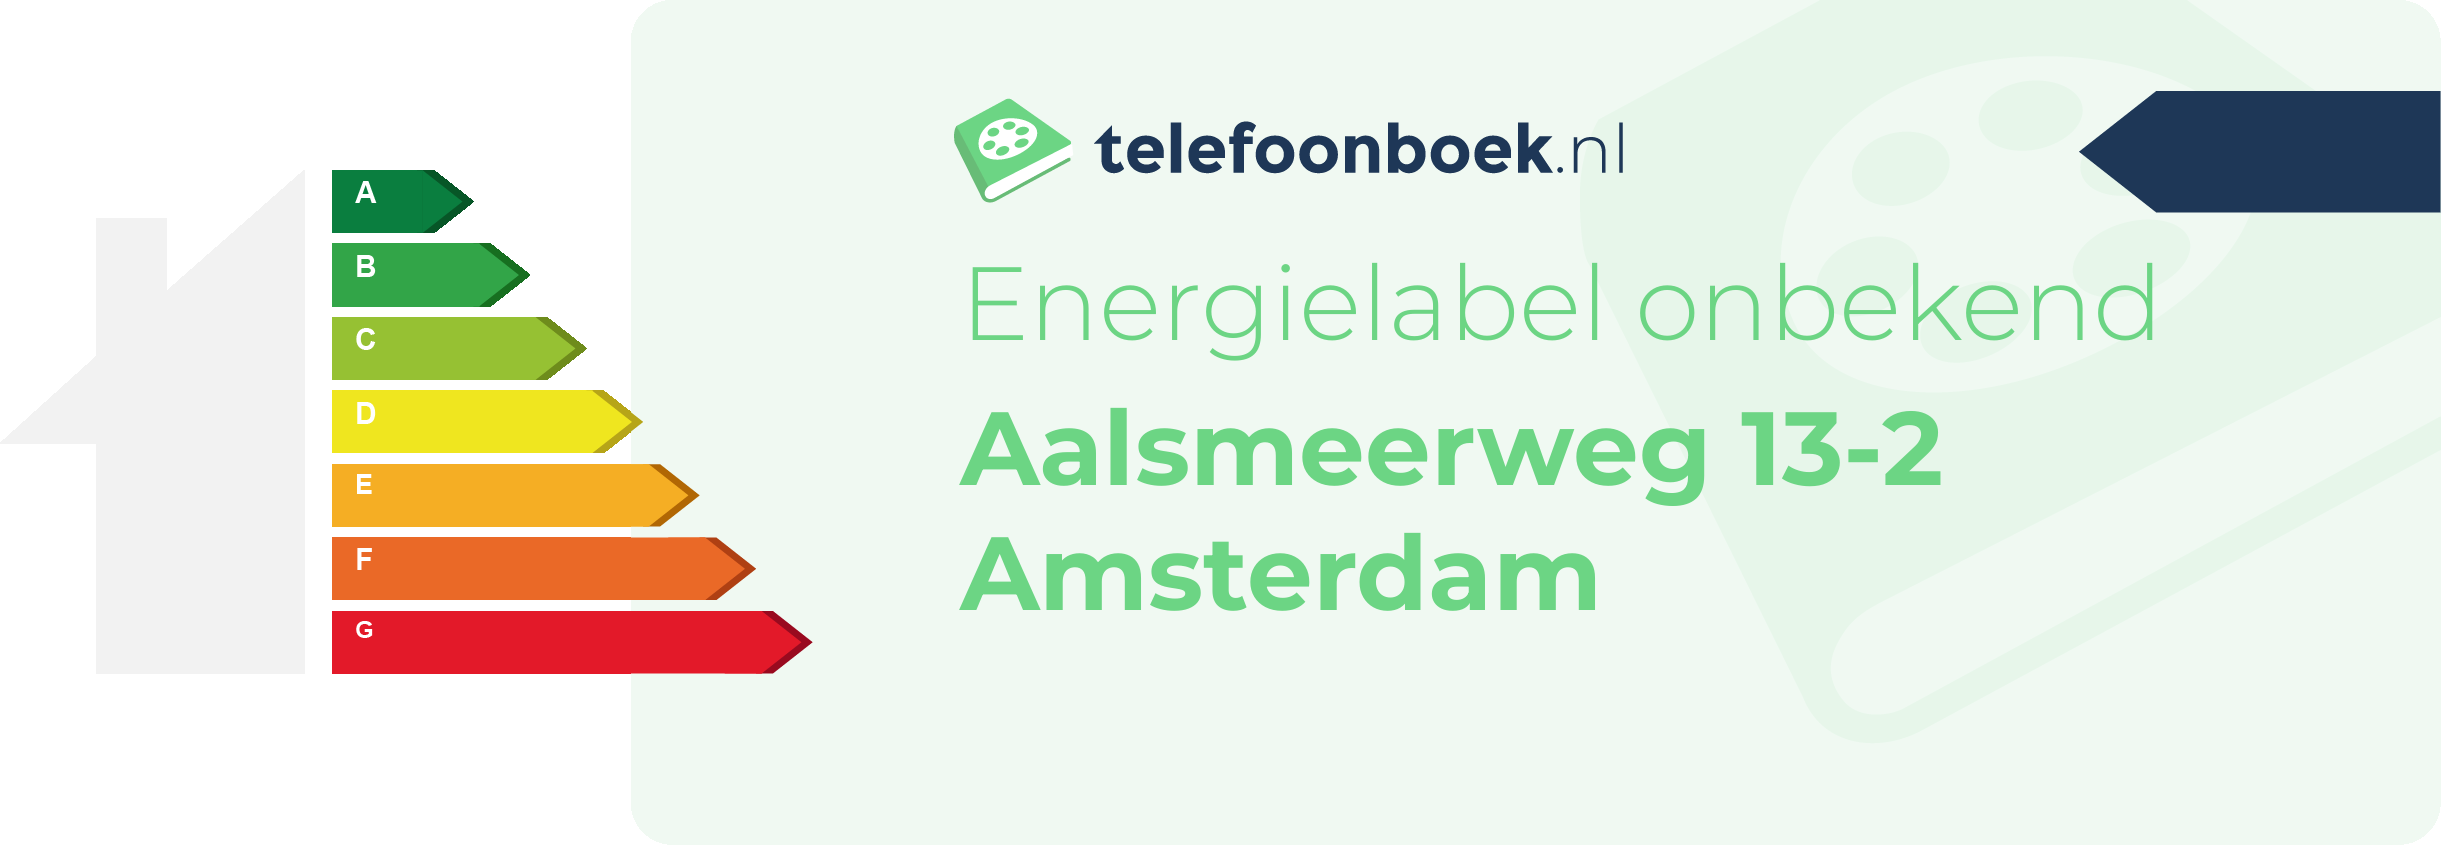 Energielabel Aalsmeerweg 13-2 Amsterdam